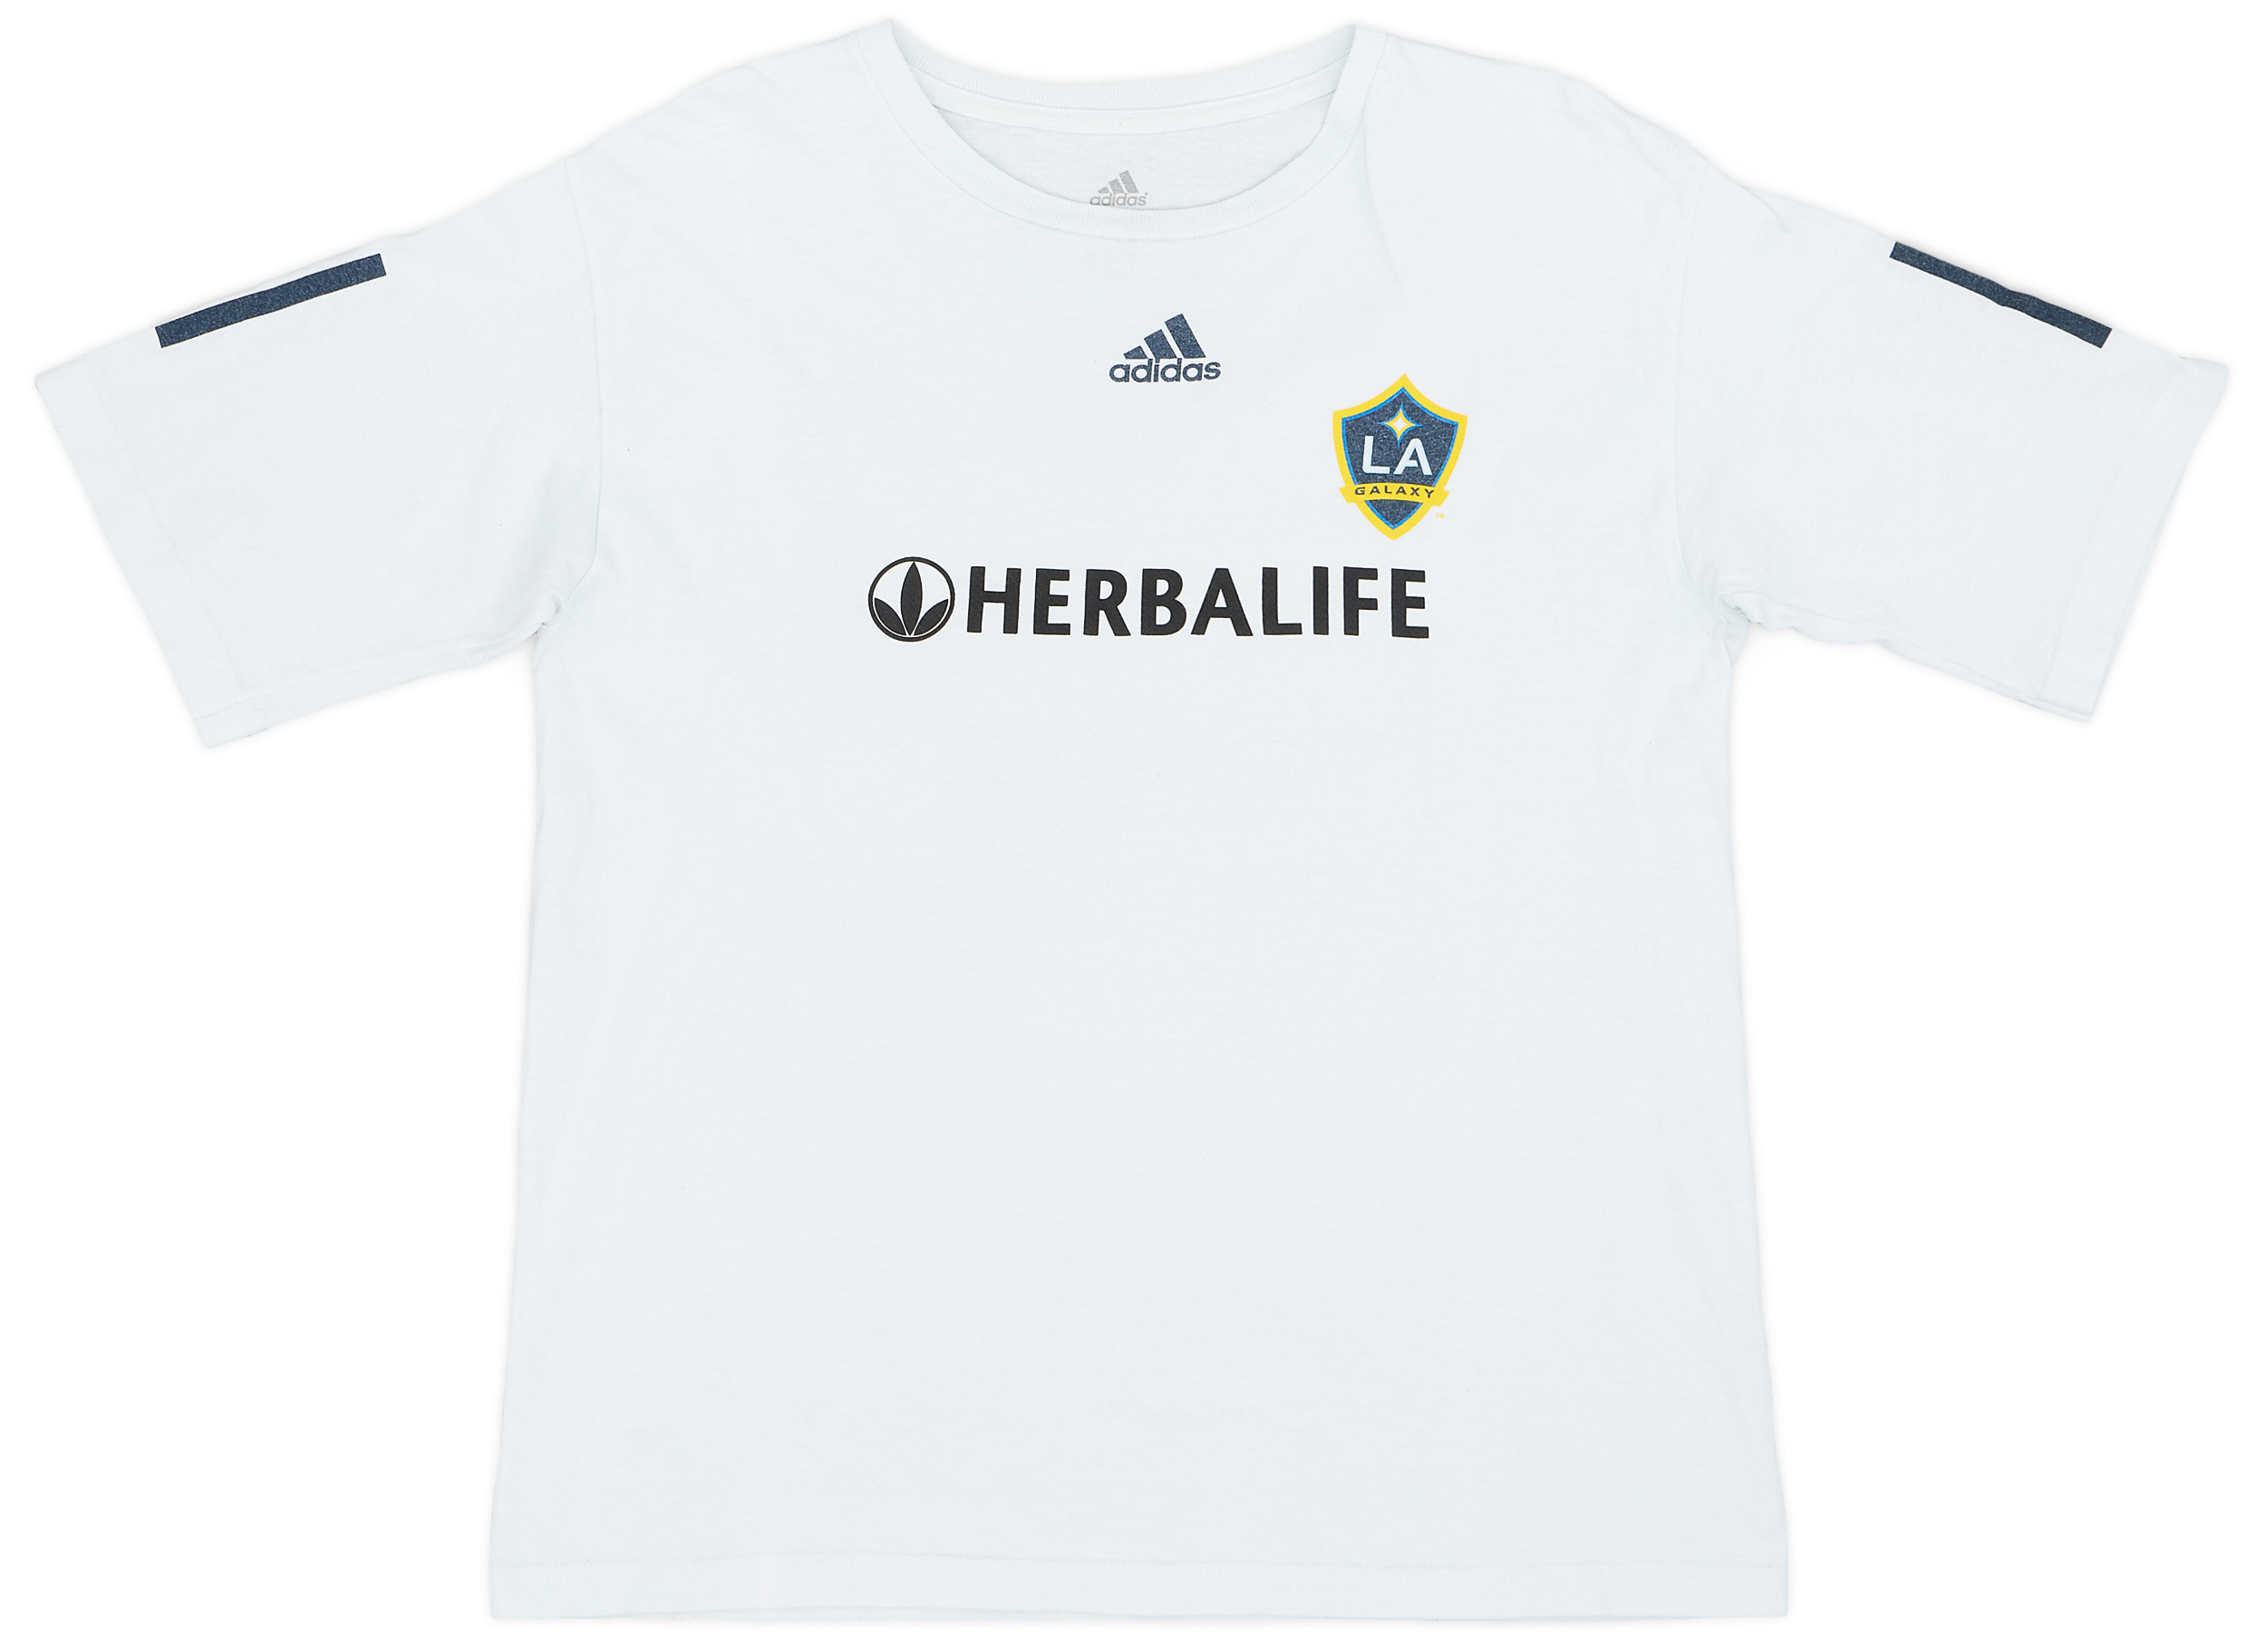 2007-10 LA Galaxy adidas Tee Shirt - 6/10 - (Women's )